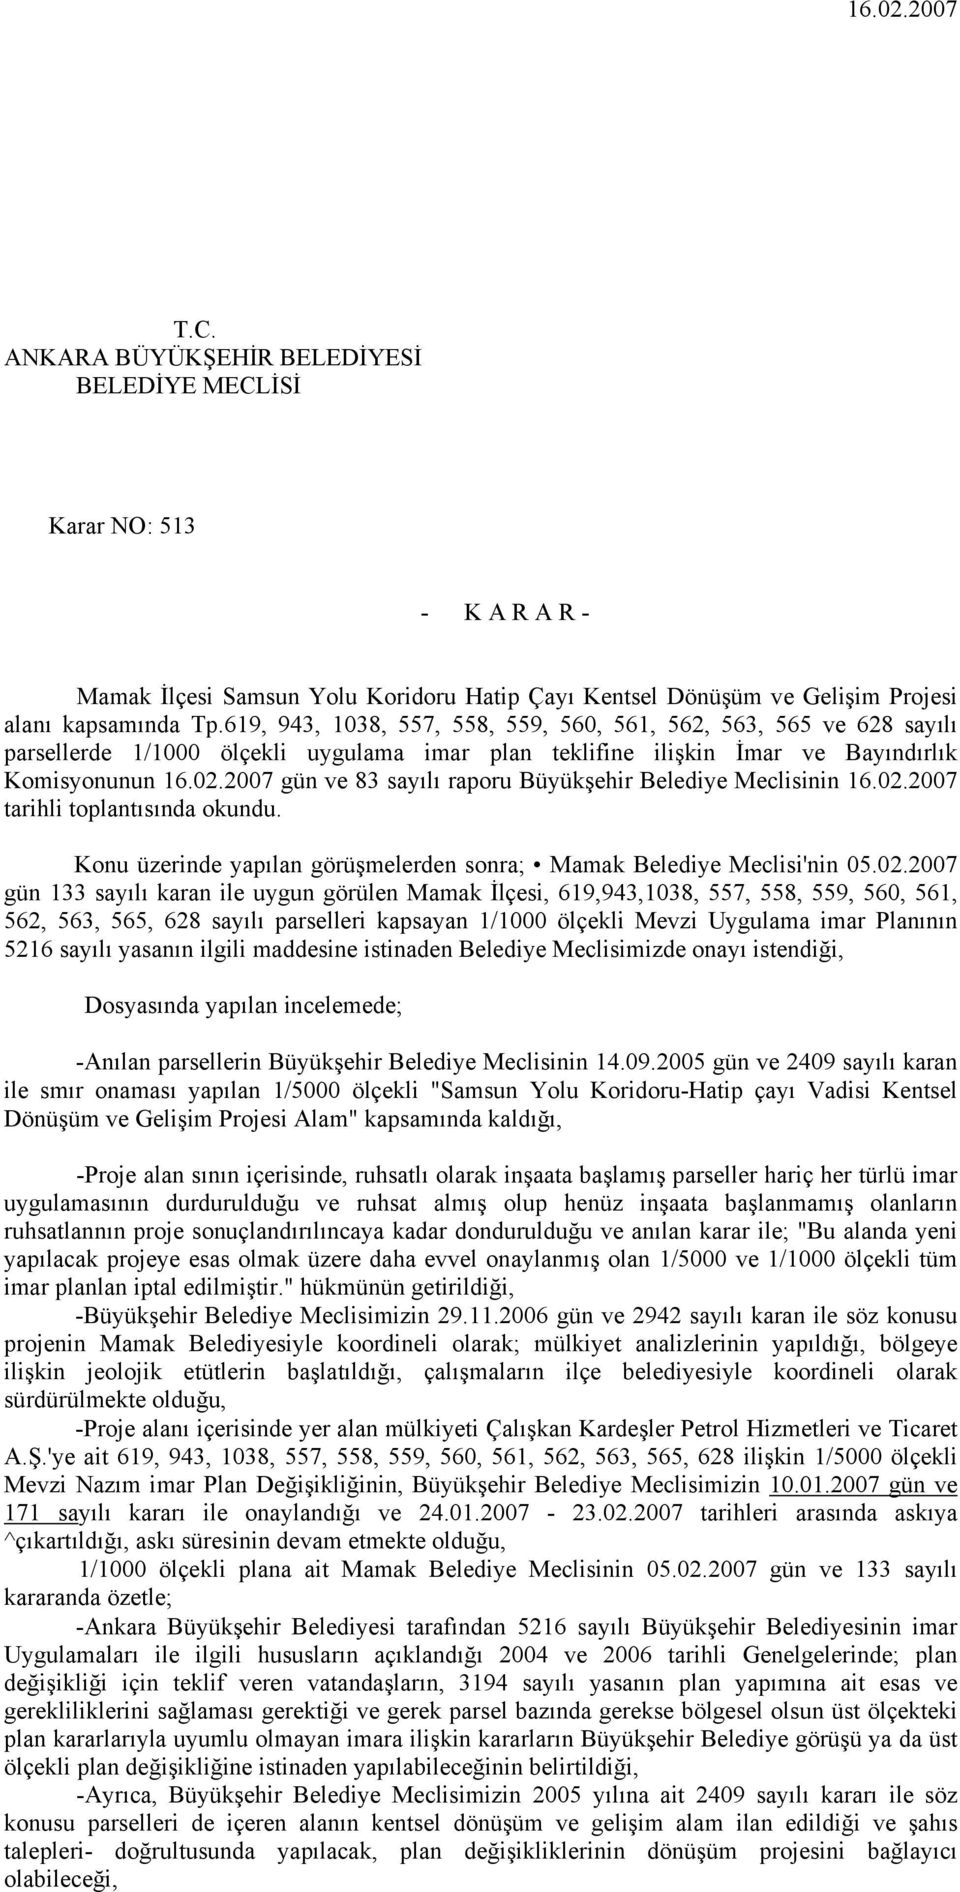 2007 gün ve 83 sayılı raporu Büyükşehir Belediye Meclisinin 16.02.